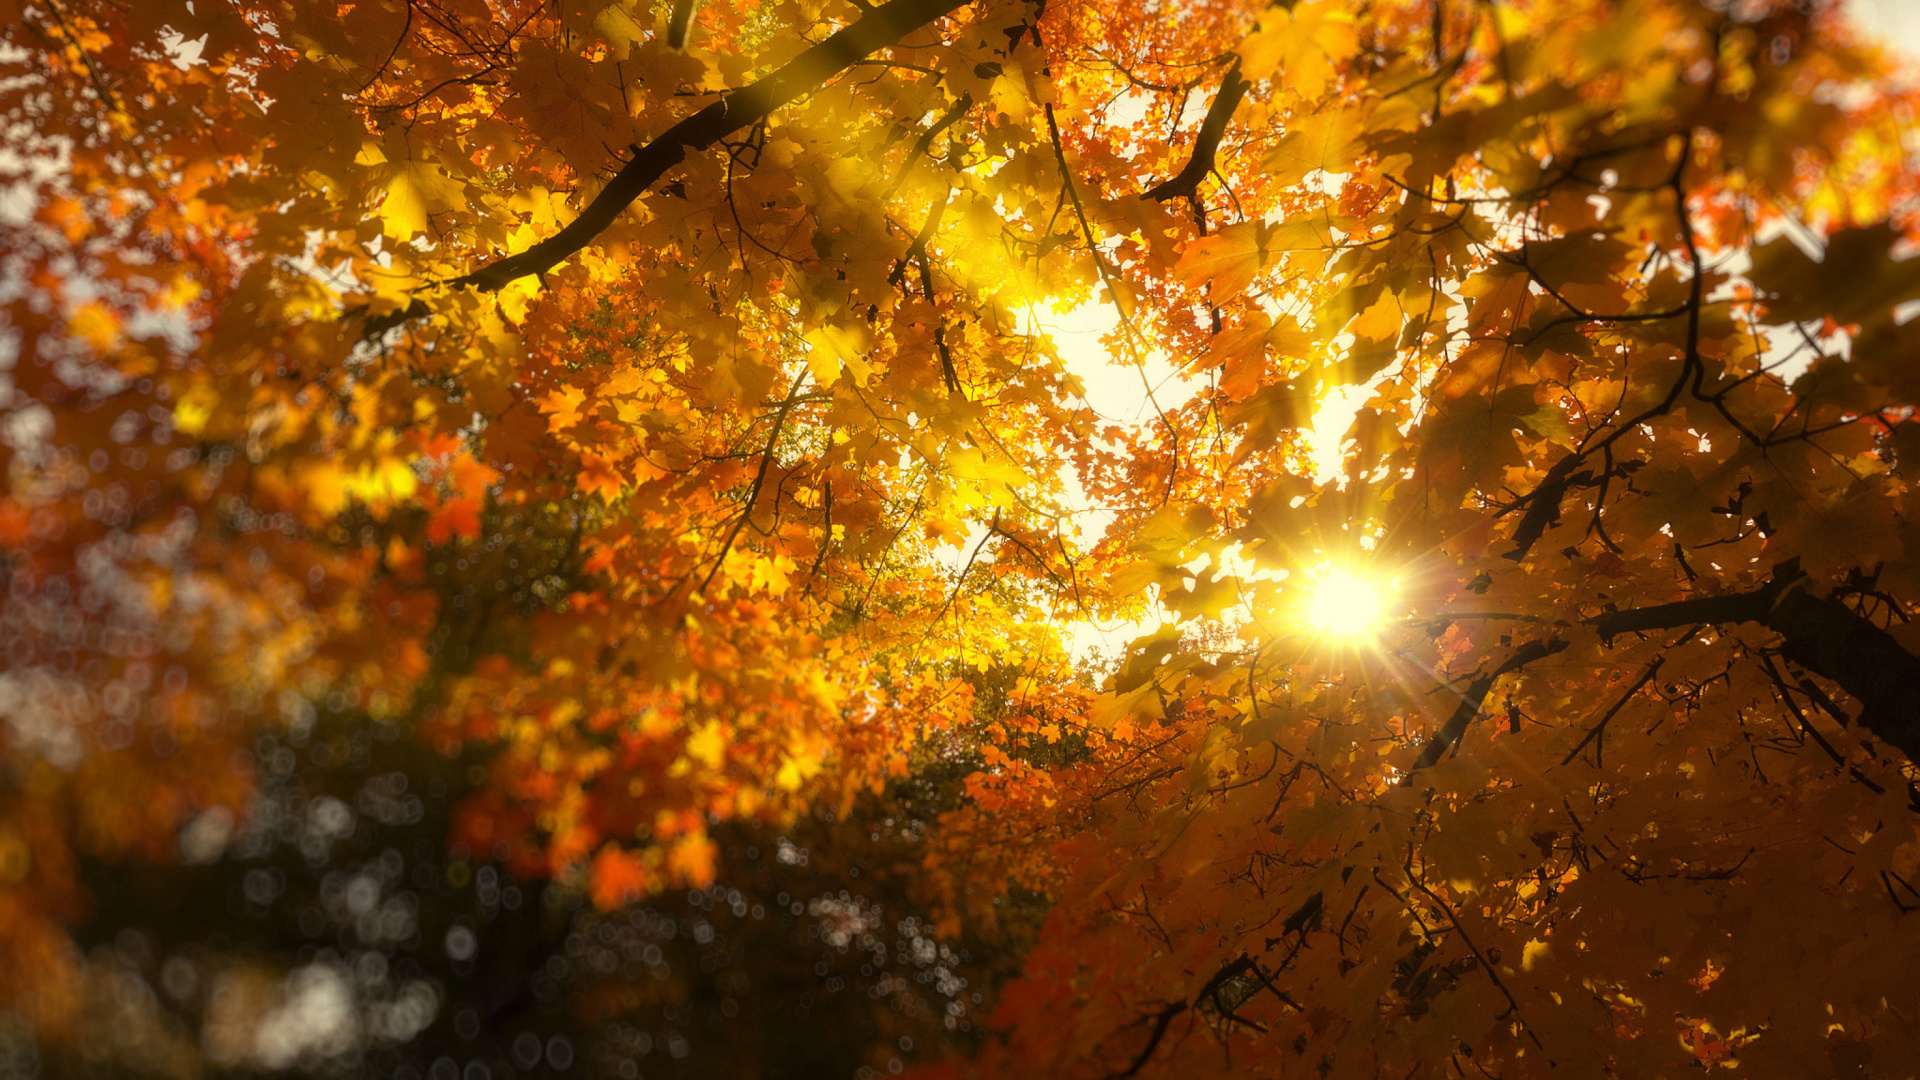 Sfondi Autumn Sunlight and Trees 1920x1080